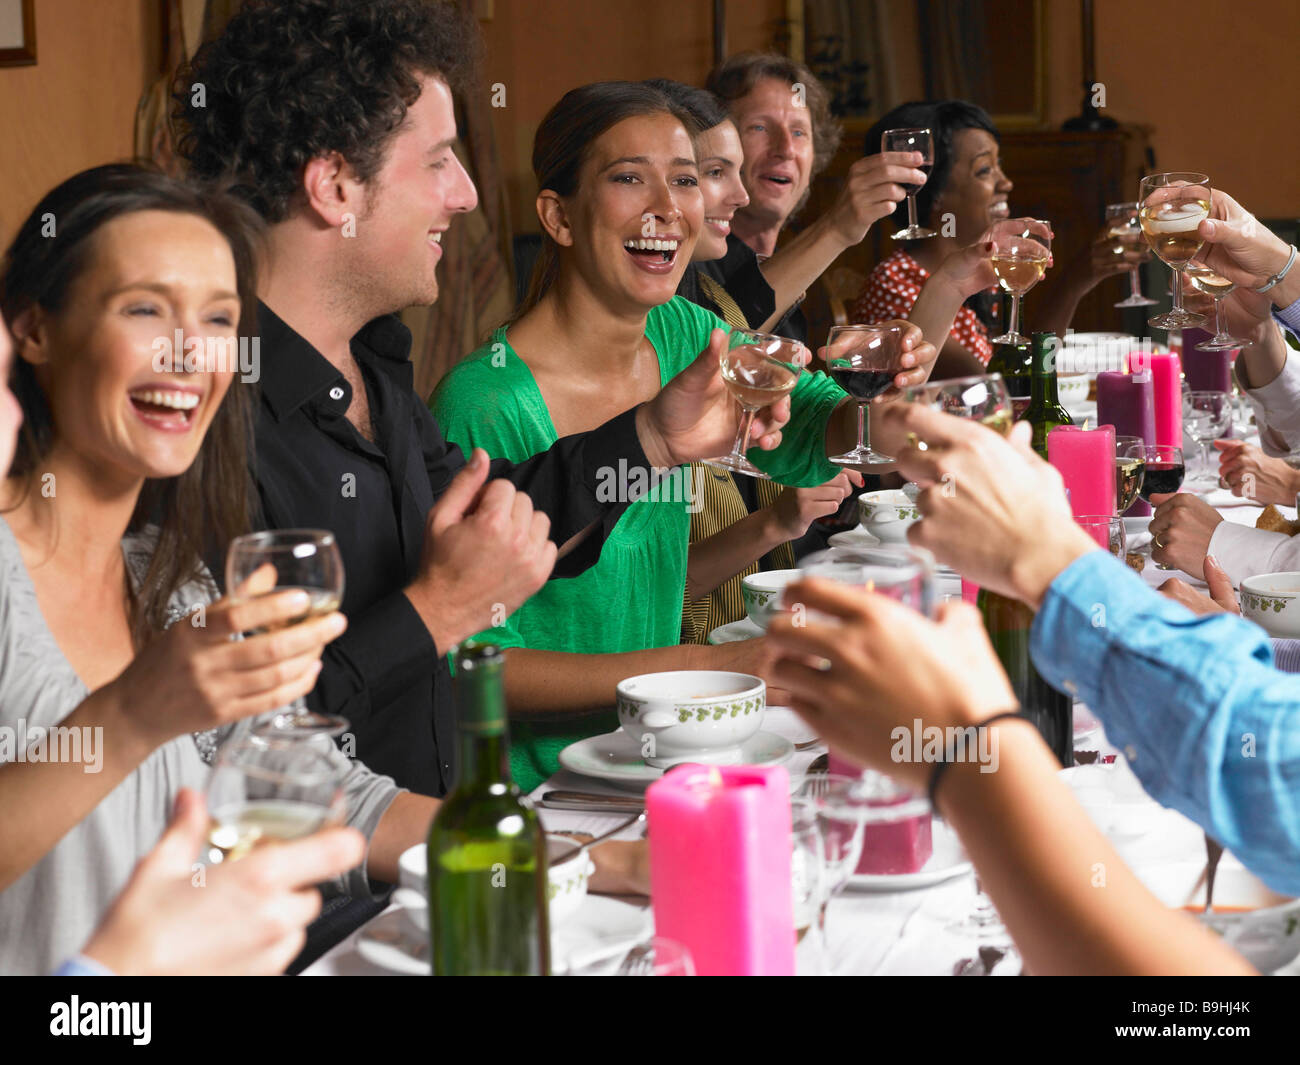 People toasting leurs verres au dîner Banque D'Images